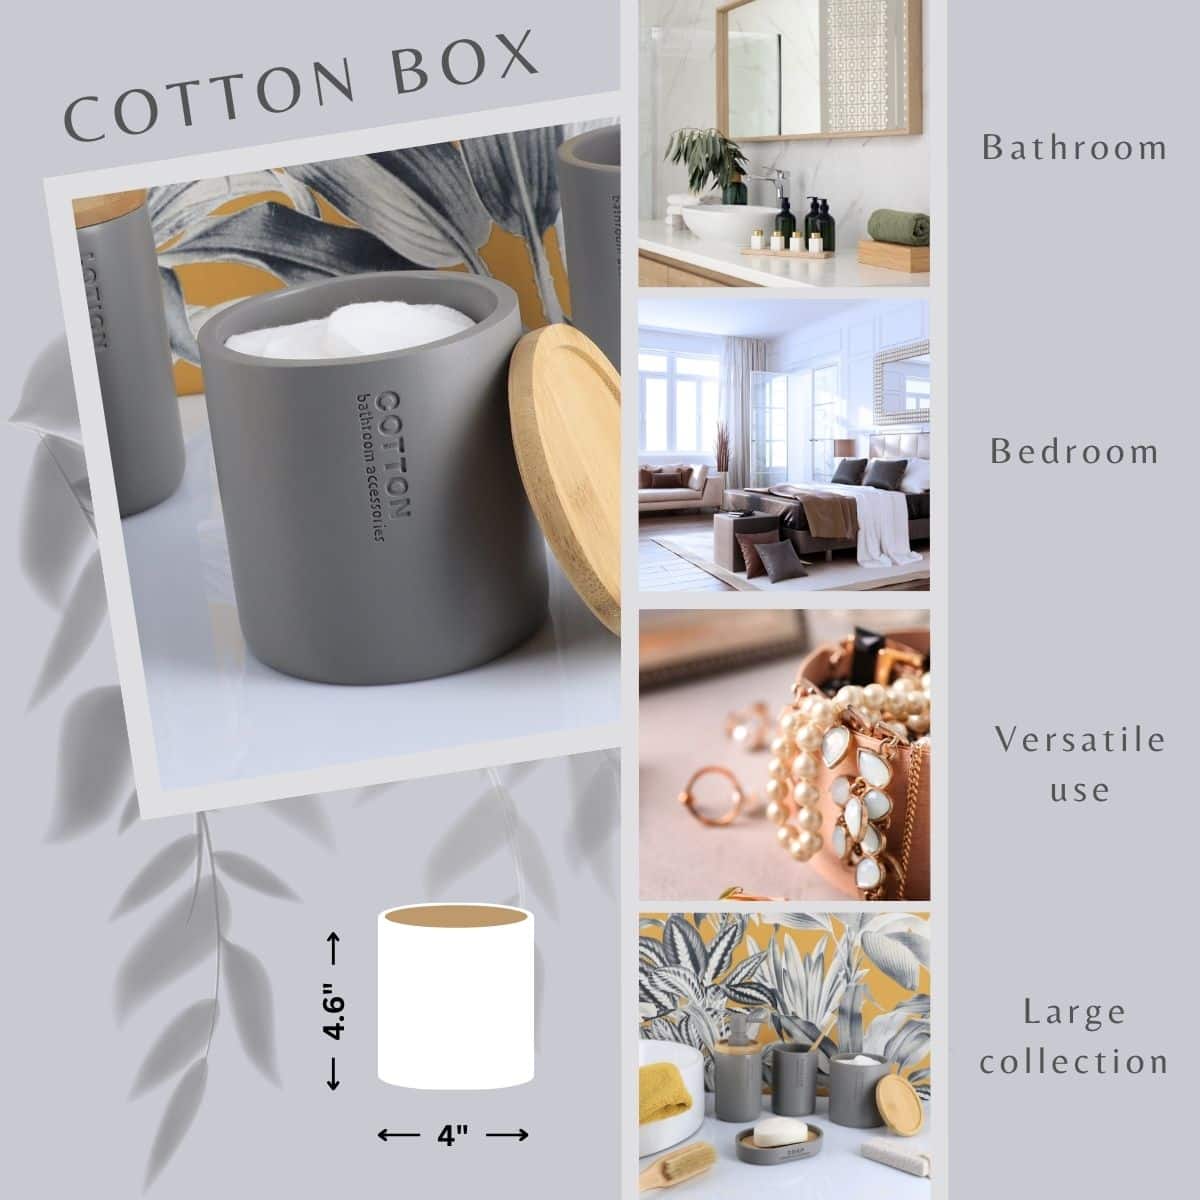 Versatile wooden ash gray cotton box for bathroom bedroom swabs pads balls jewels beauty accessories